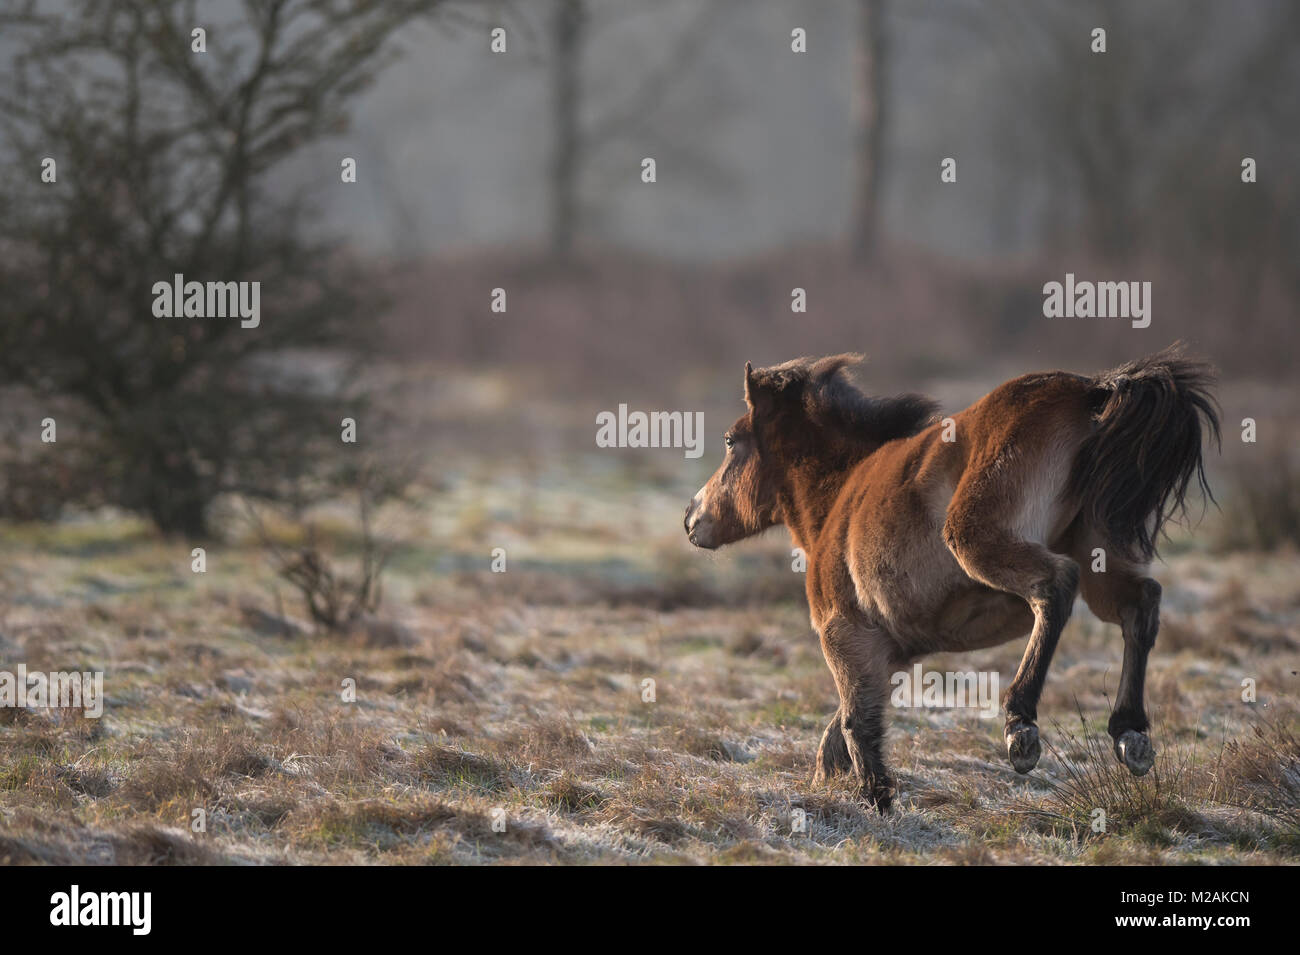 Exmoor pony Stock Photo